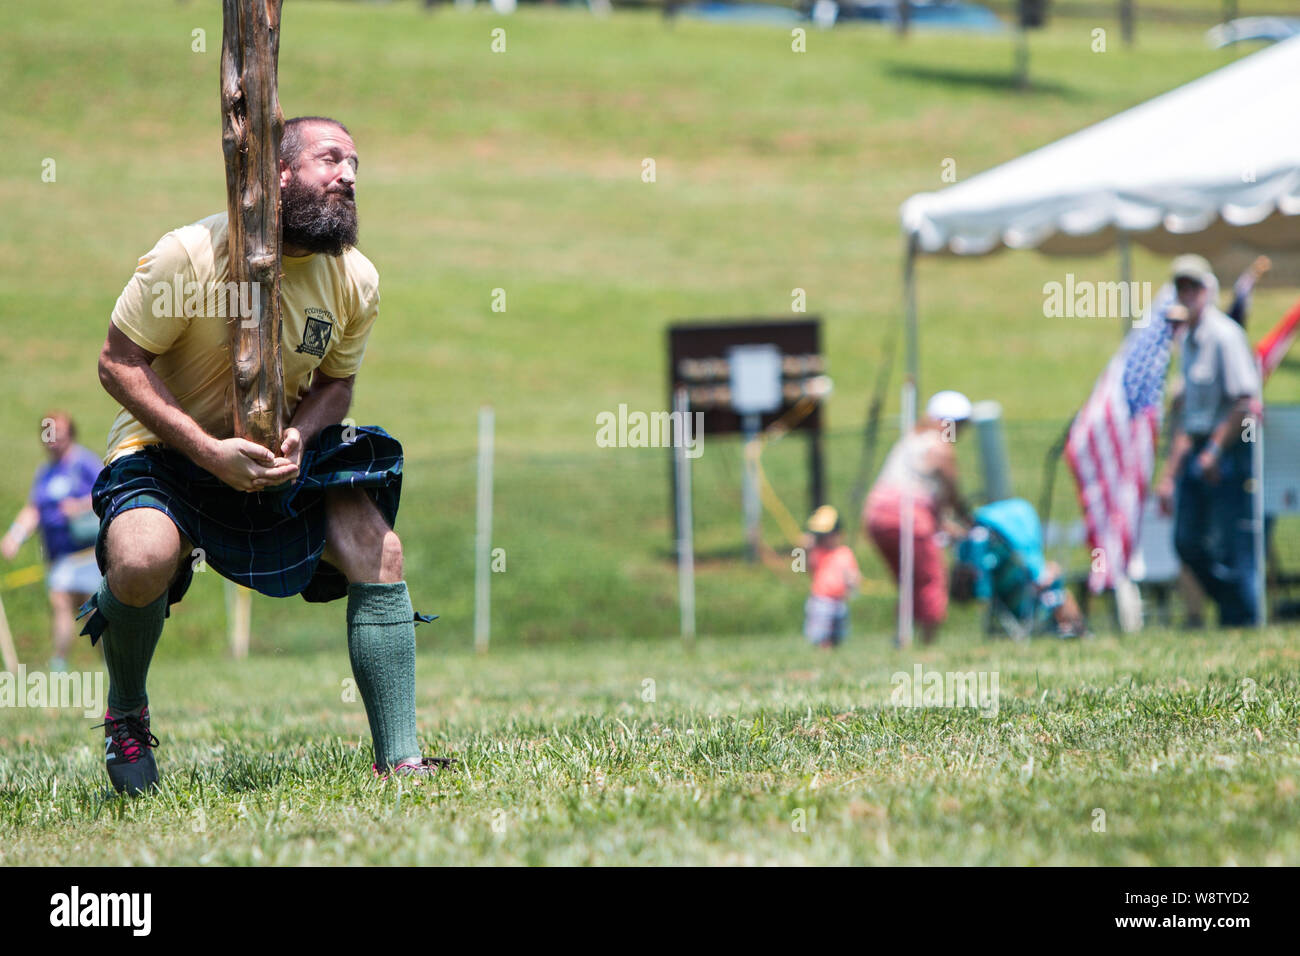 Un hombre corre en posición para realizar una caber toss, arrojando un registro cónico, a Blairsville Scottish Highland Games en Blairsville, GA. Foto de stock